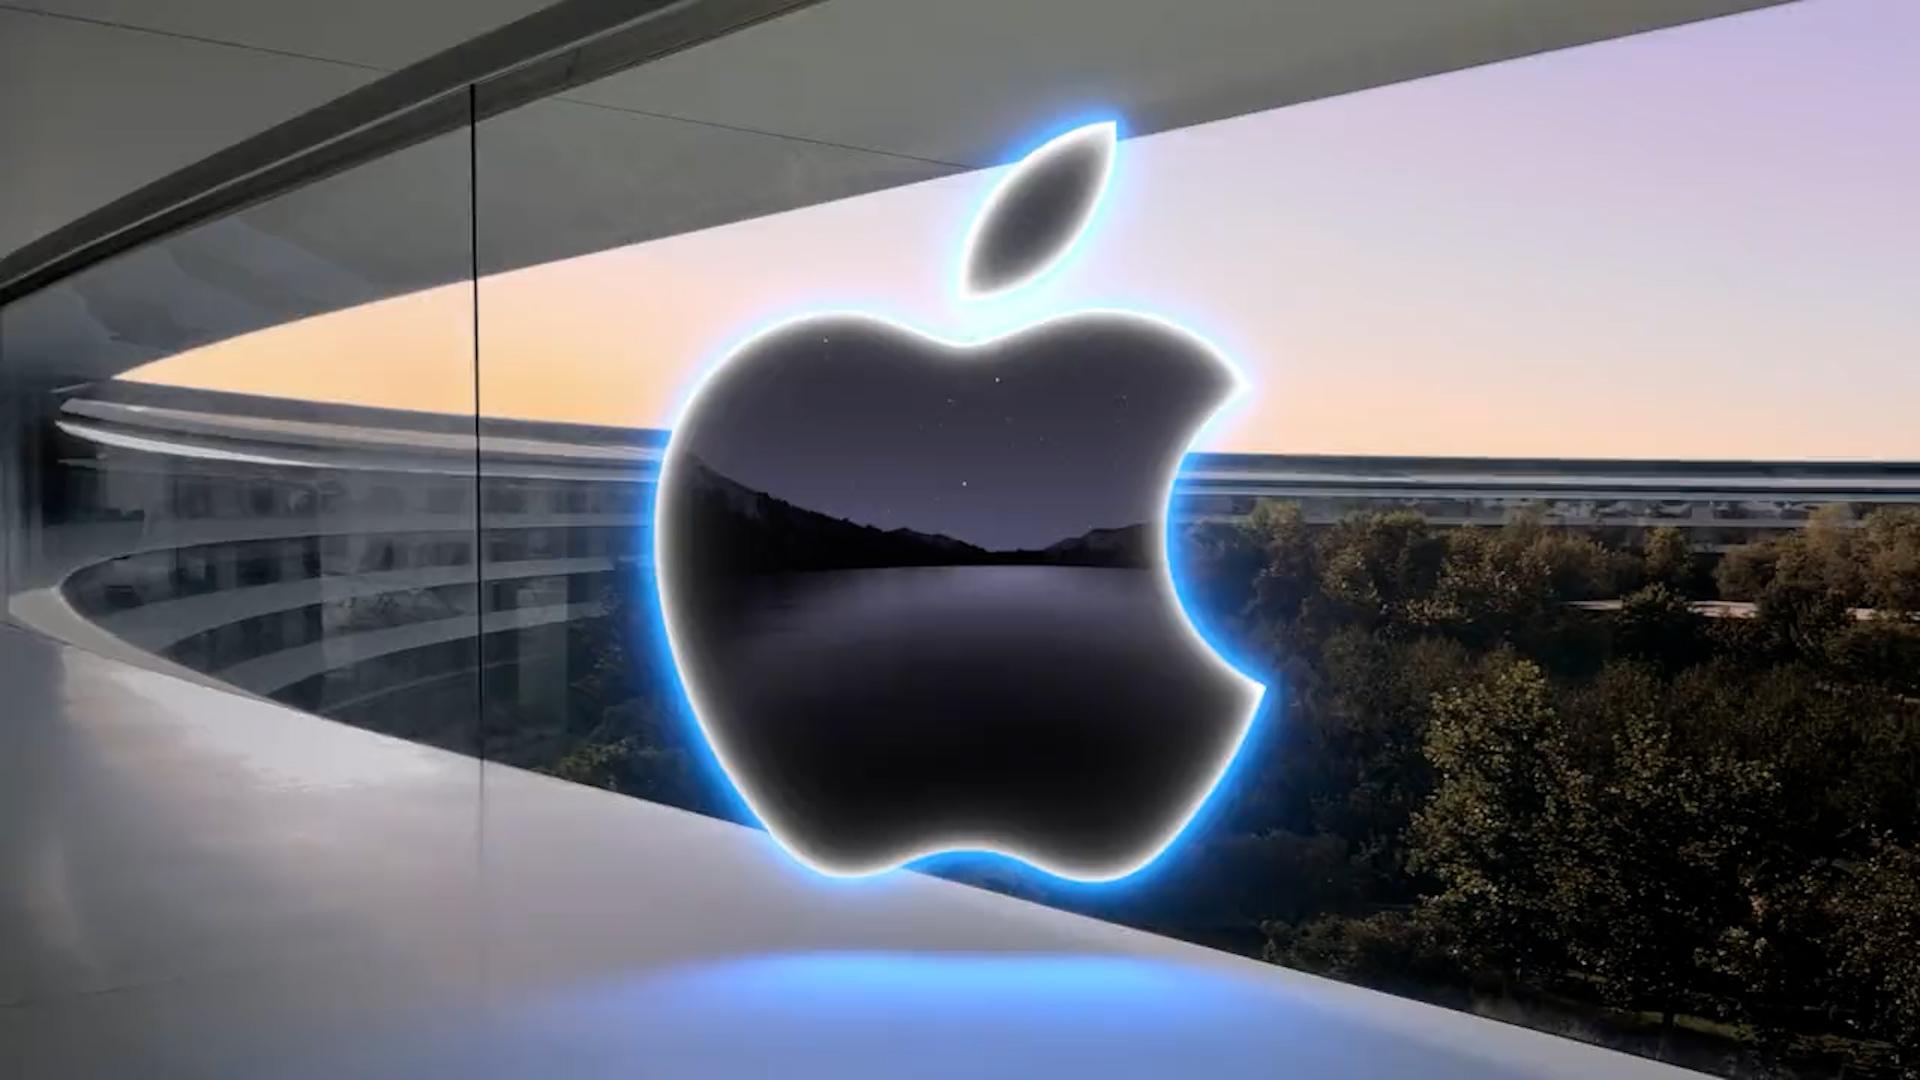 Το νέο Apple event είναι γεγονός: Αυτά είναι τα προϊόντα που θα παρουσιάσει ο τεχνολογικός κολοσσός